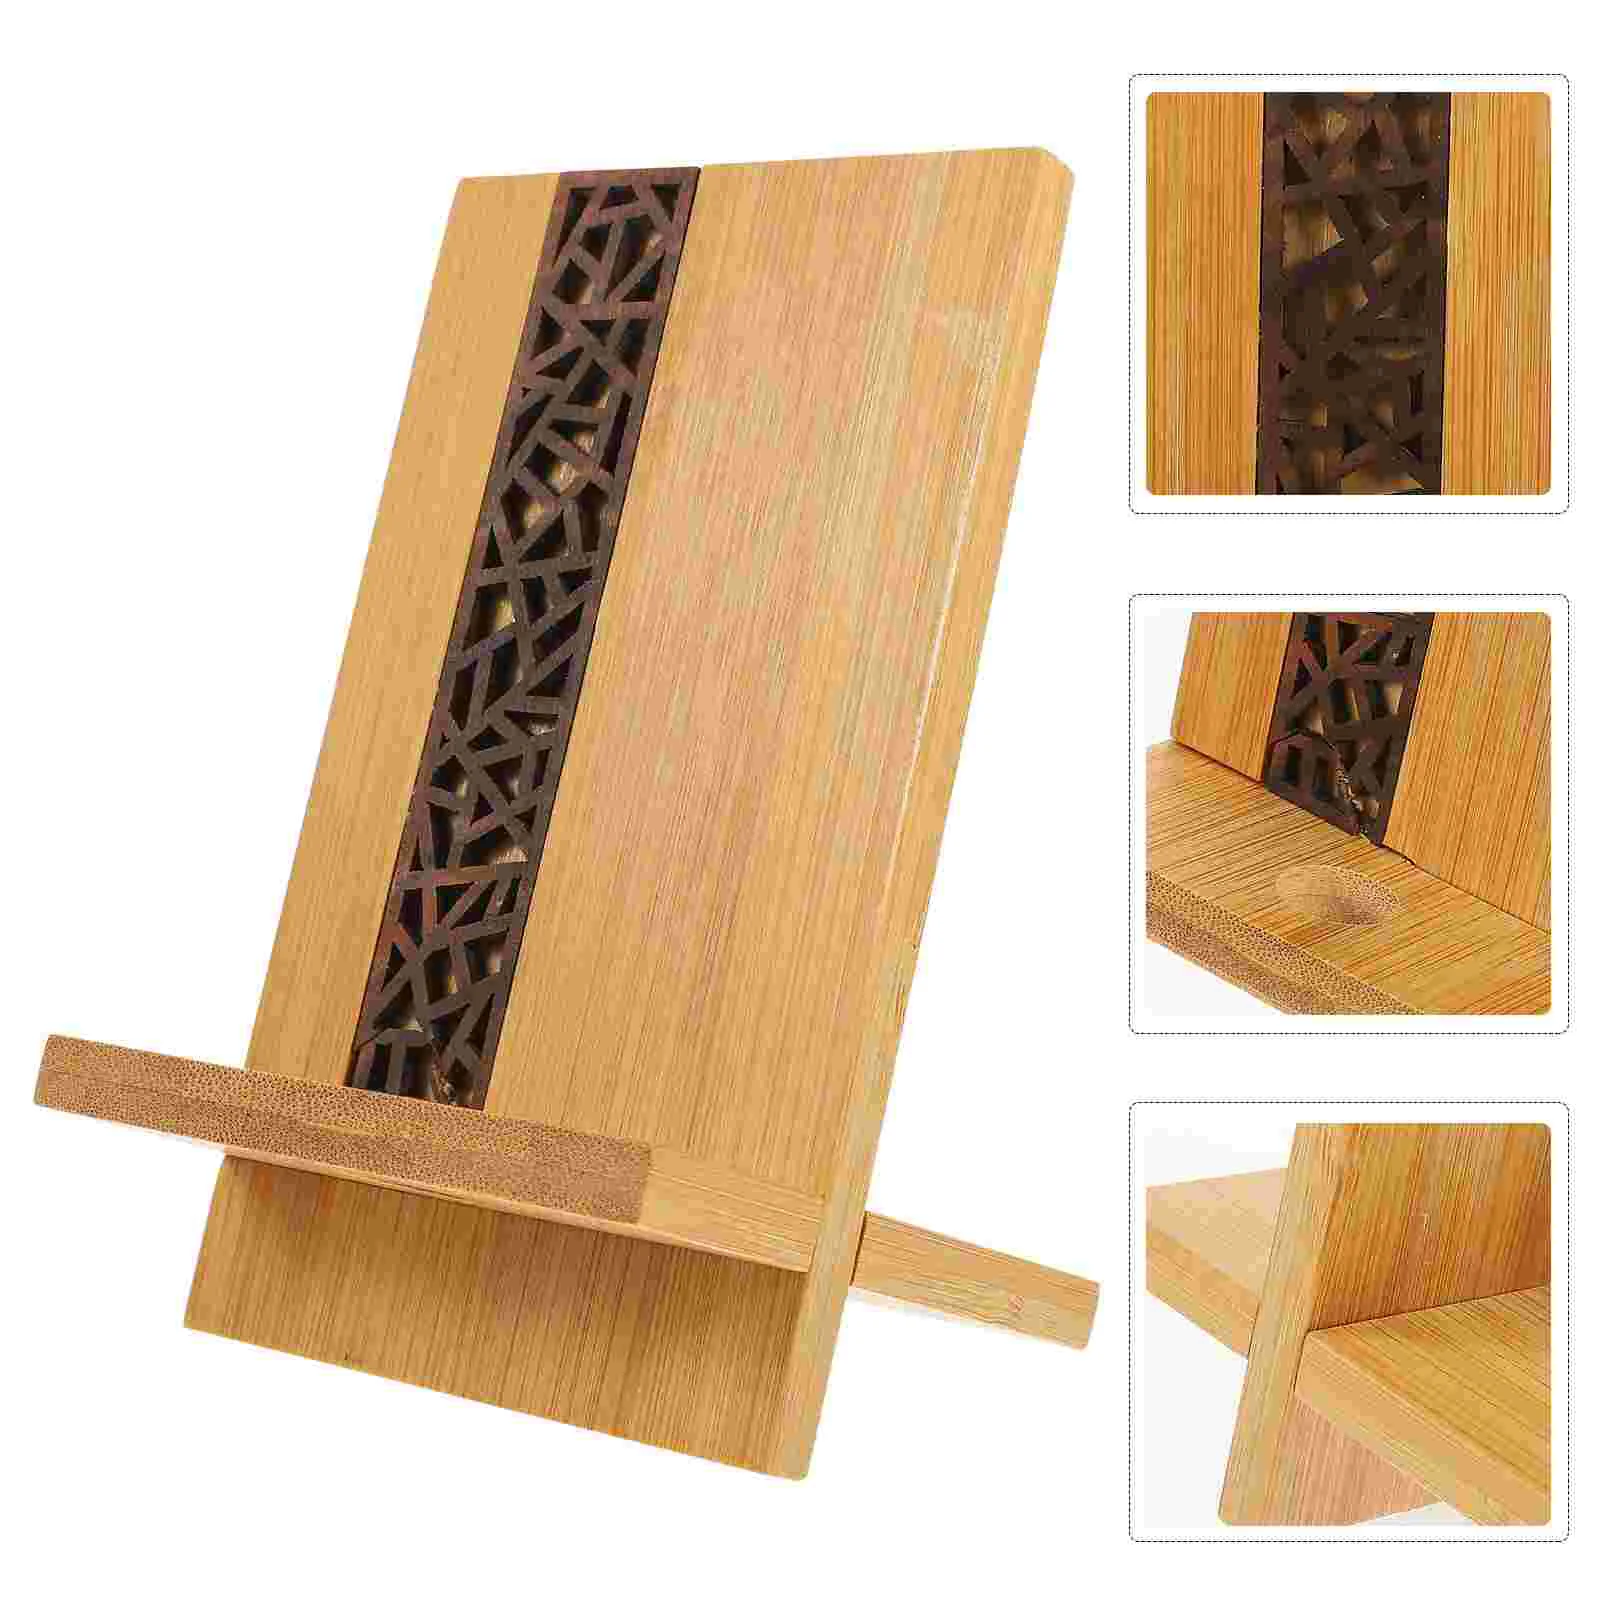 

Stand Wood Desk Holder Tablet Mobile Dock Organizer Station Support Cellphone Desktop Rack Cradle Decoration Wooden Craft Cell